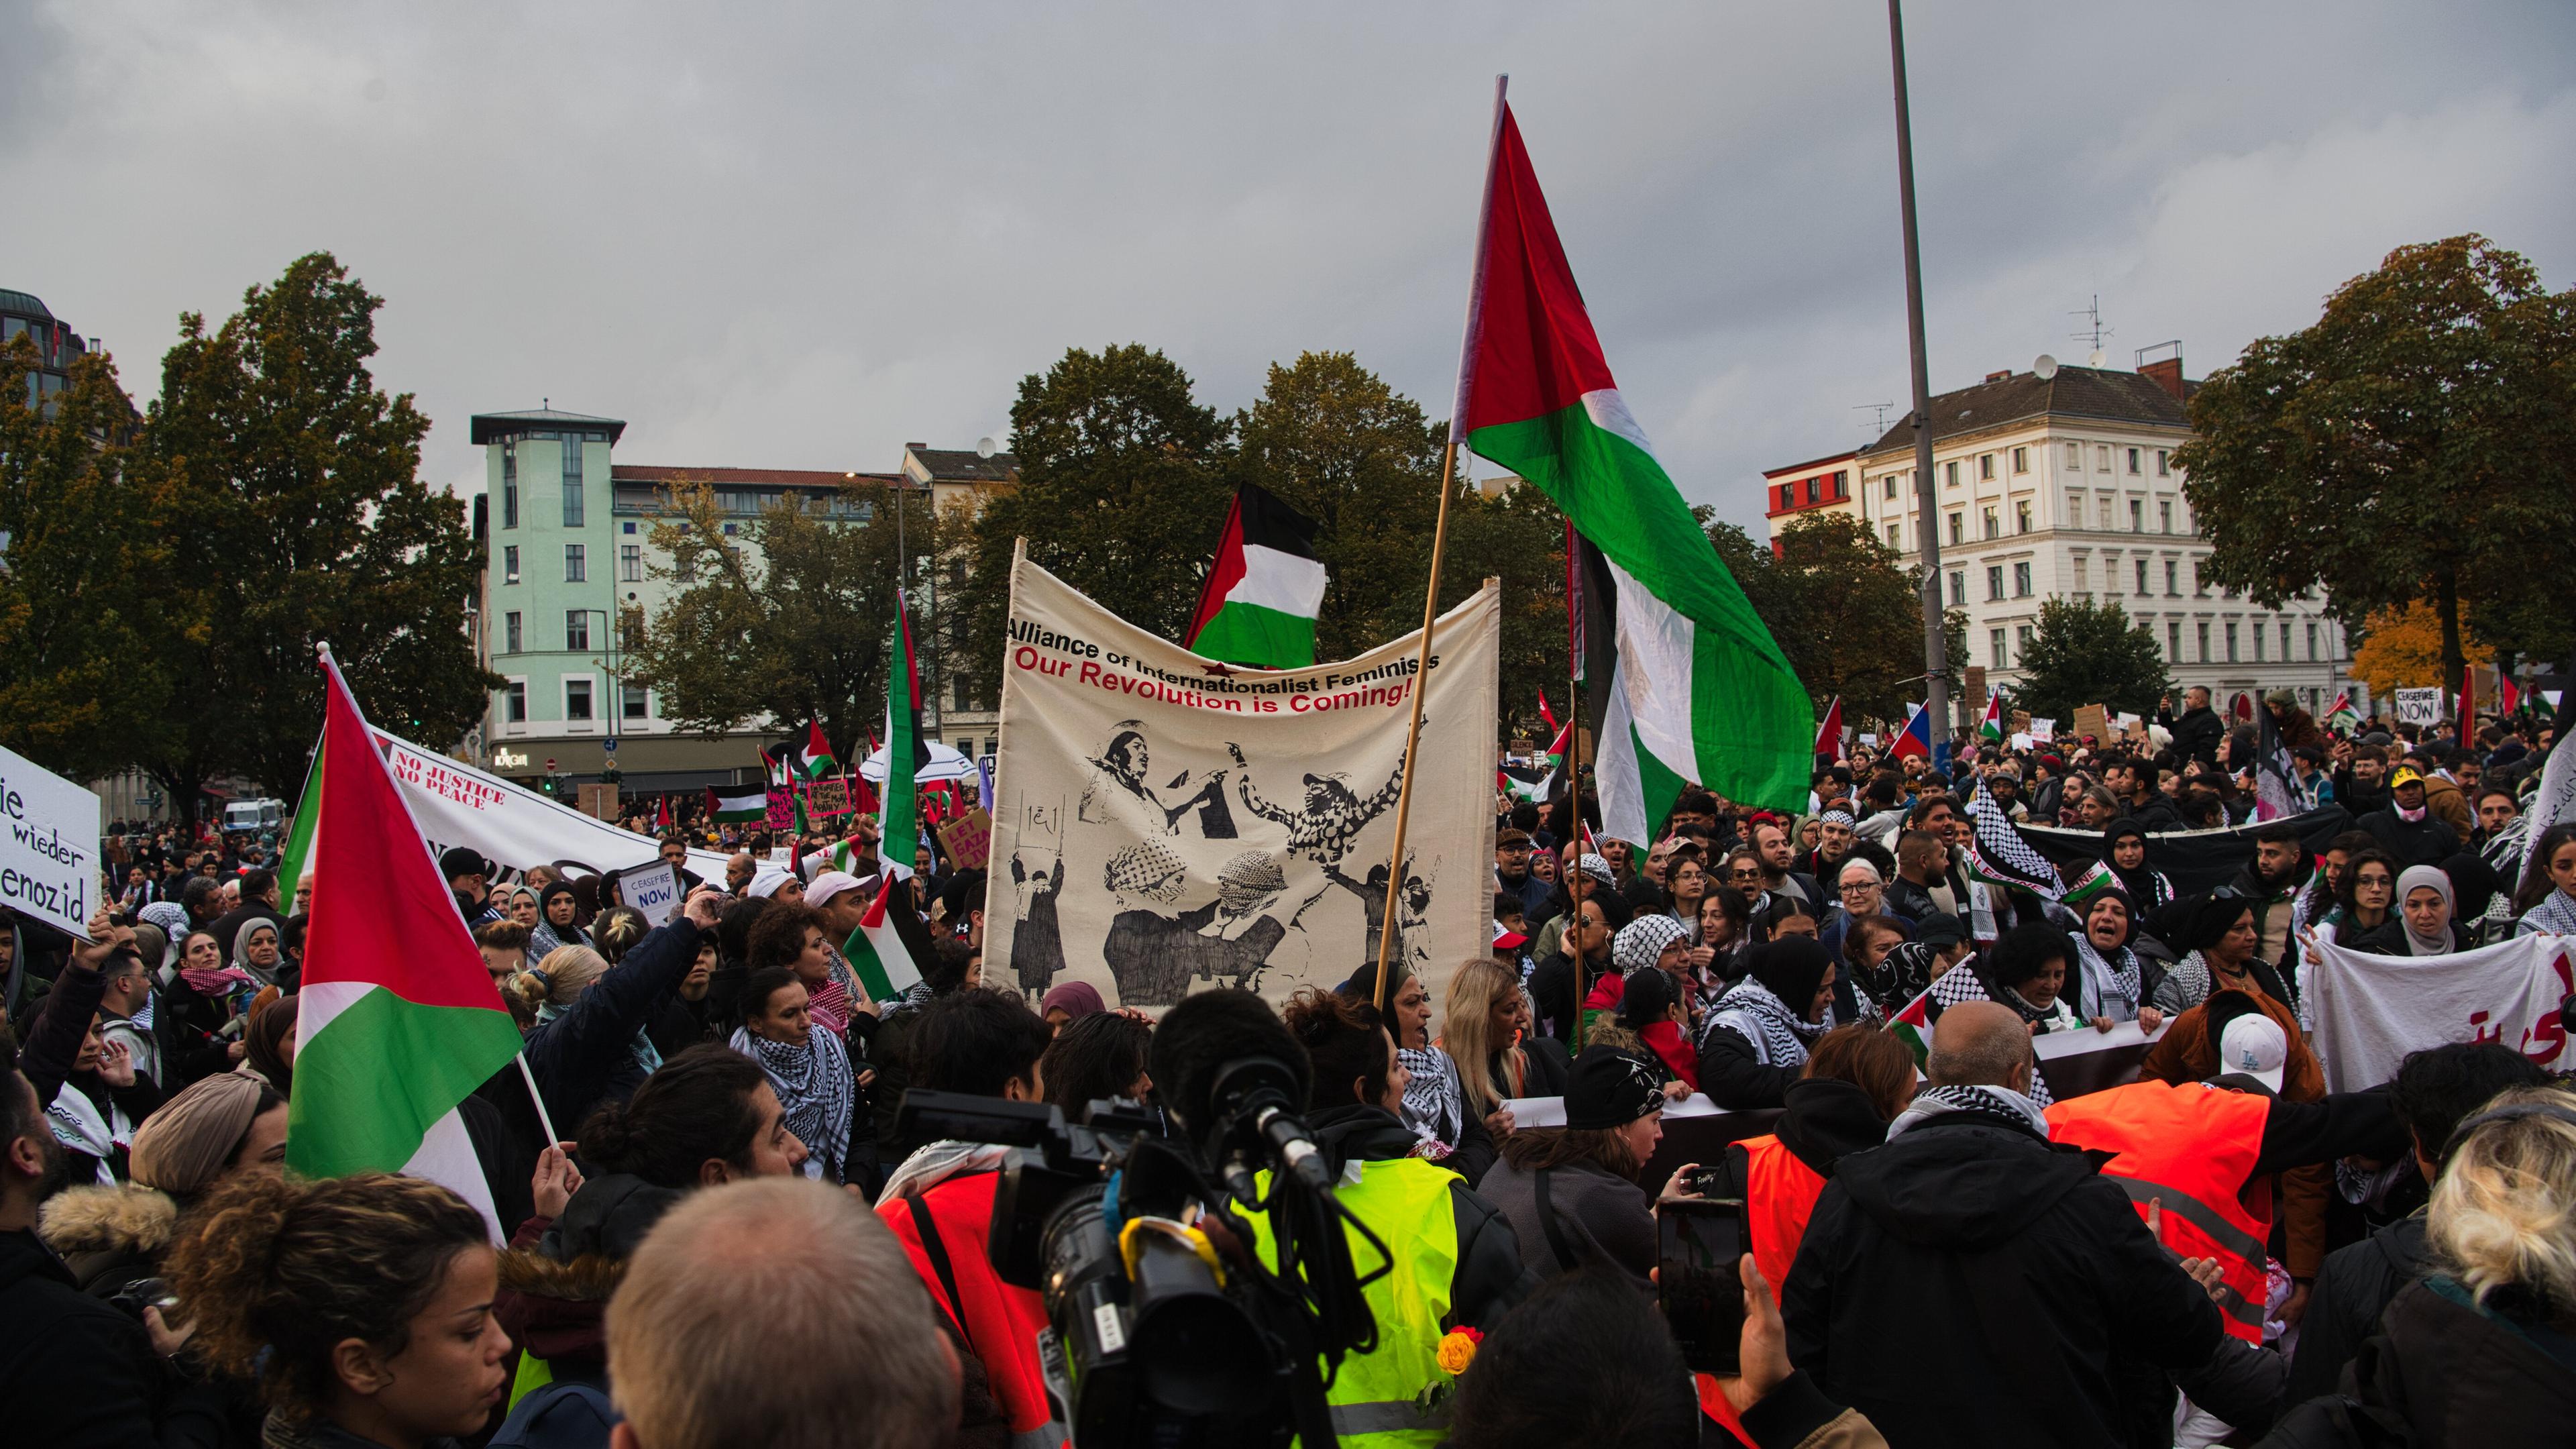 Auch in Berlin-Kreuzberg kamen laut Polizei etwa 3.000 Teilnehmer zu einem pro-palästinensischen Protest zusammen. Kritisiert wurde unter anderem die Bundesregierung, weil diese Israel unterstützt.